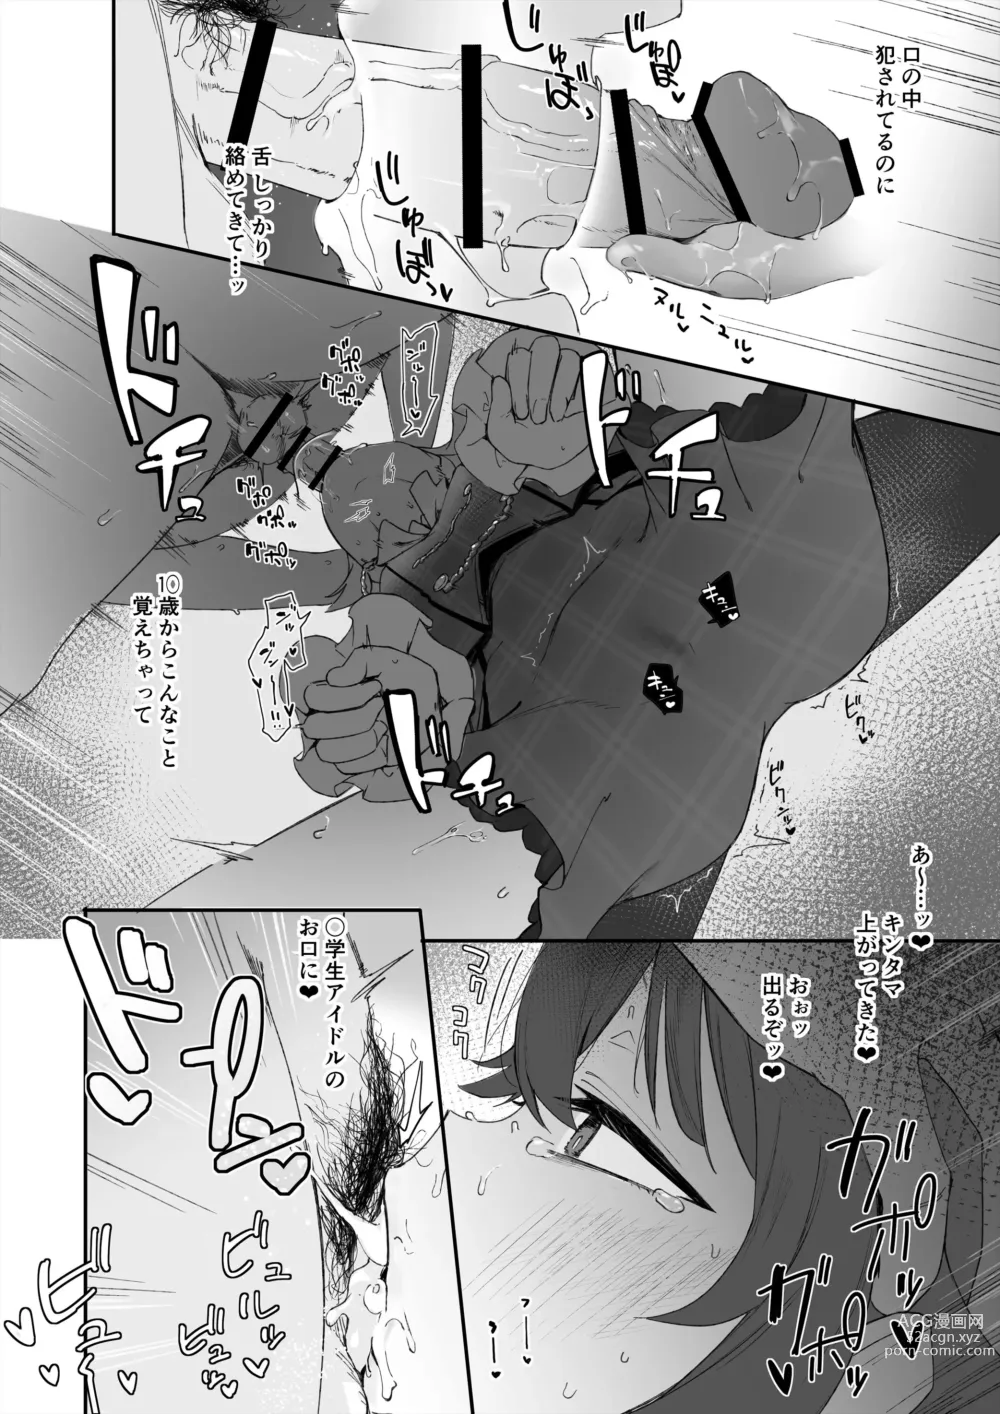 Page 6 of doujinshi Chinpo Kagi suru Kaho + 4P Fella Manga